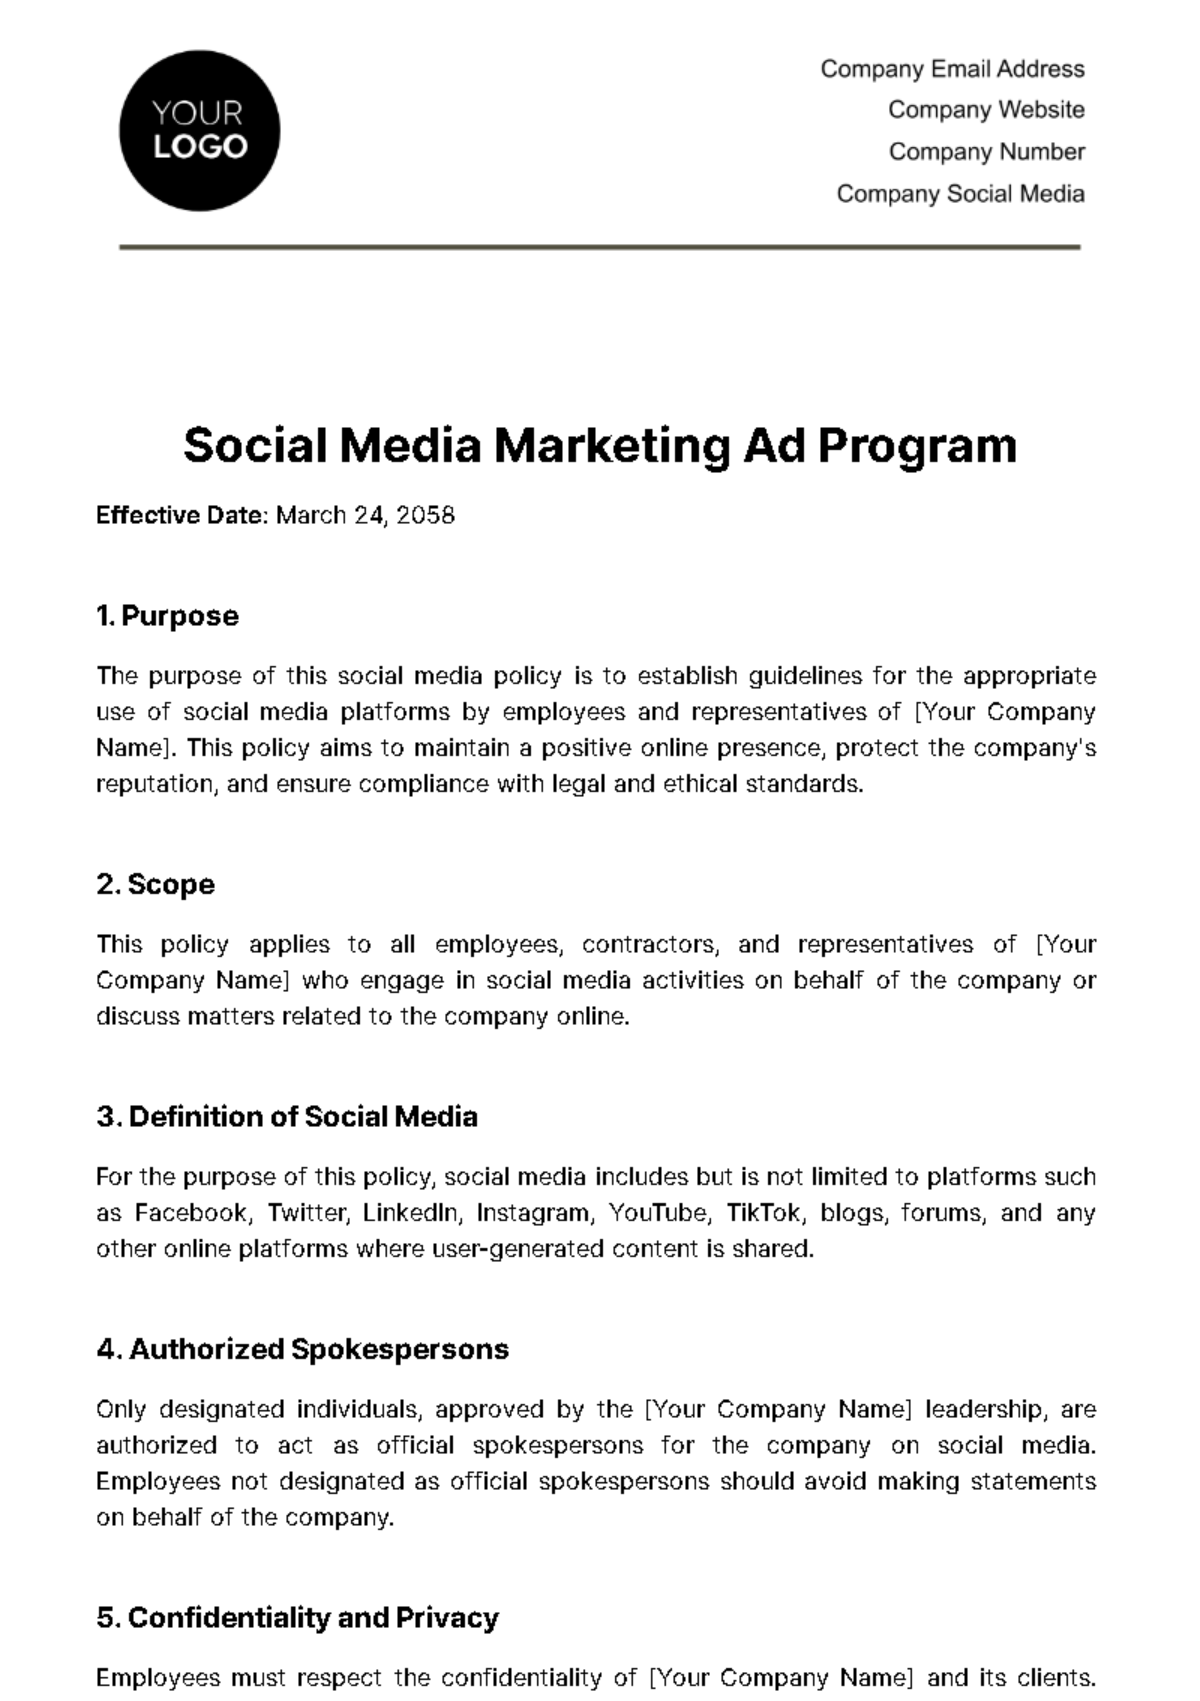 Social Media Marketing Ad Program Template